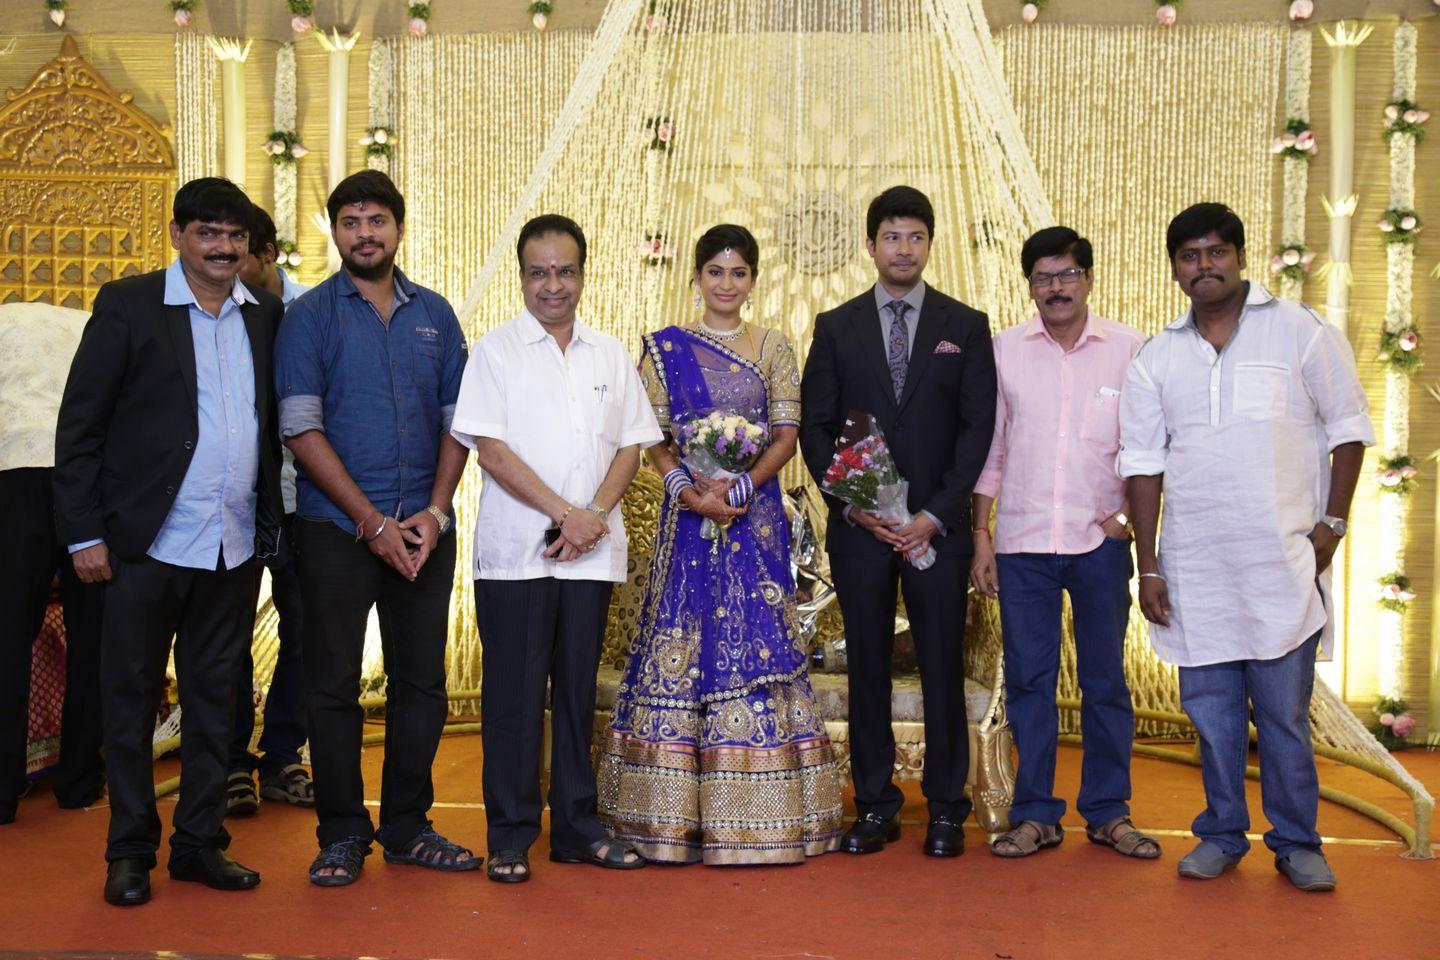 Feroz - Vijayalakshmi Wedding Reception Photos